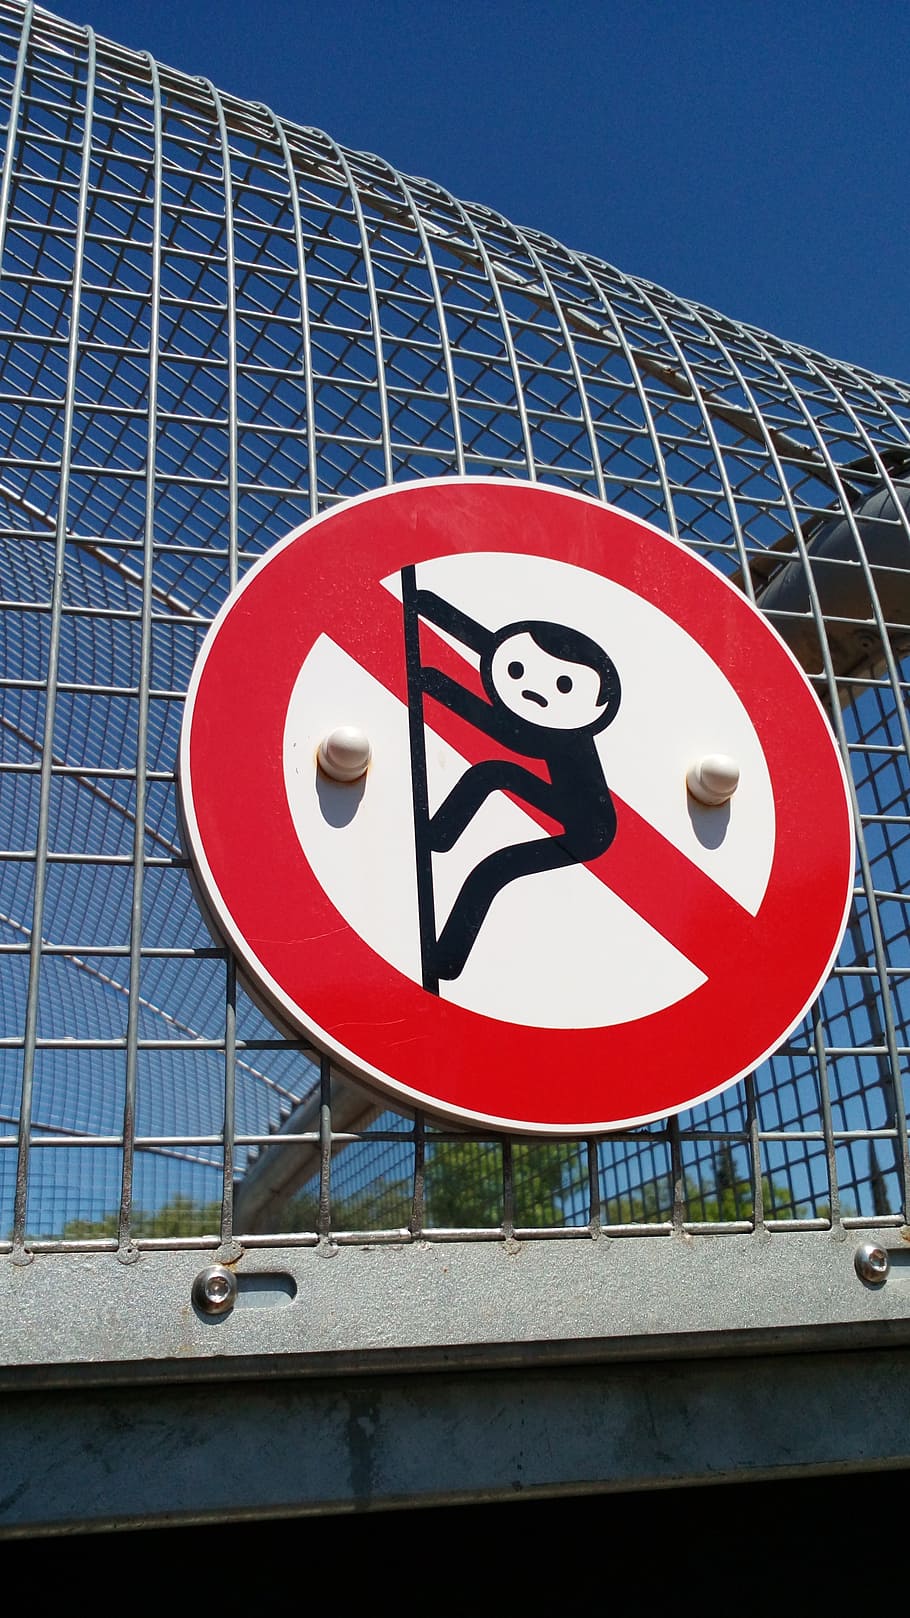 ban, monkey, child, climb, sign, communication, low angle view